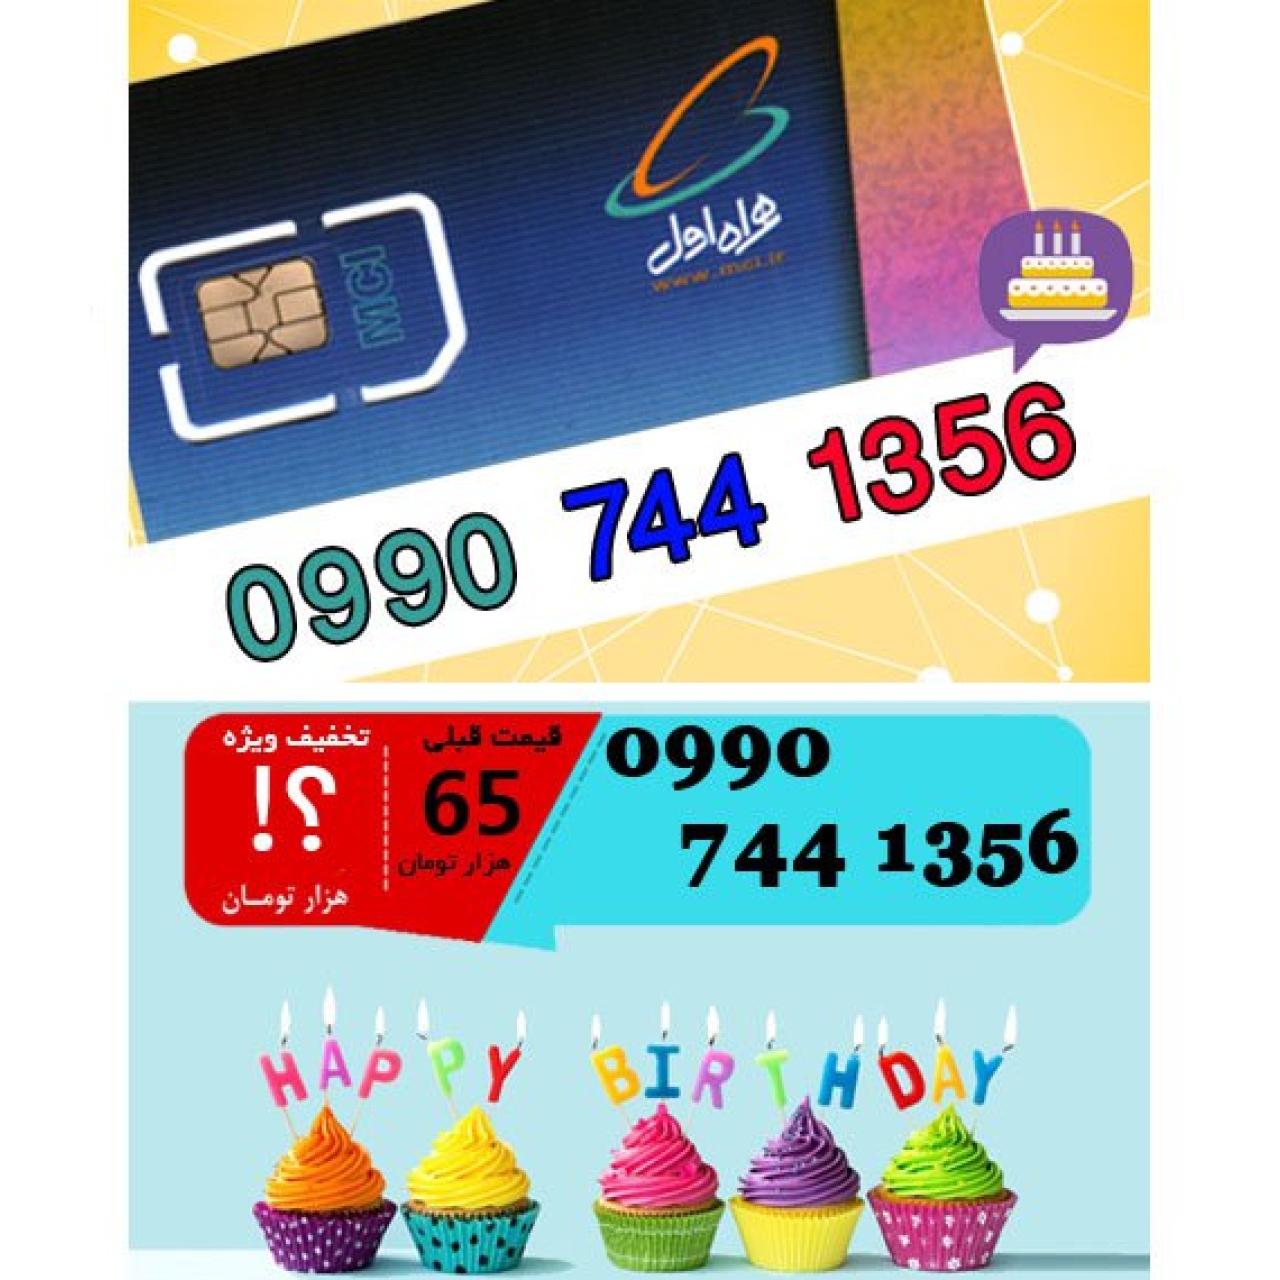 سیم کارت اعتباری همراه اول 09907441356 تاریخ تولد